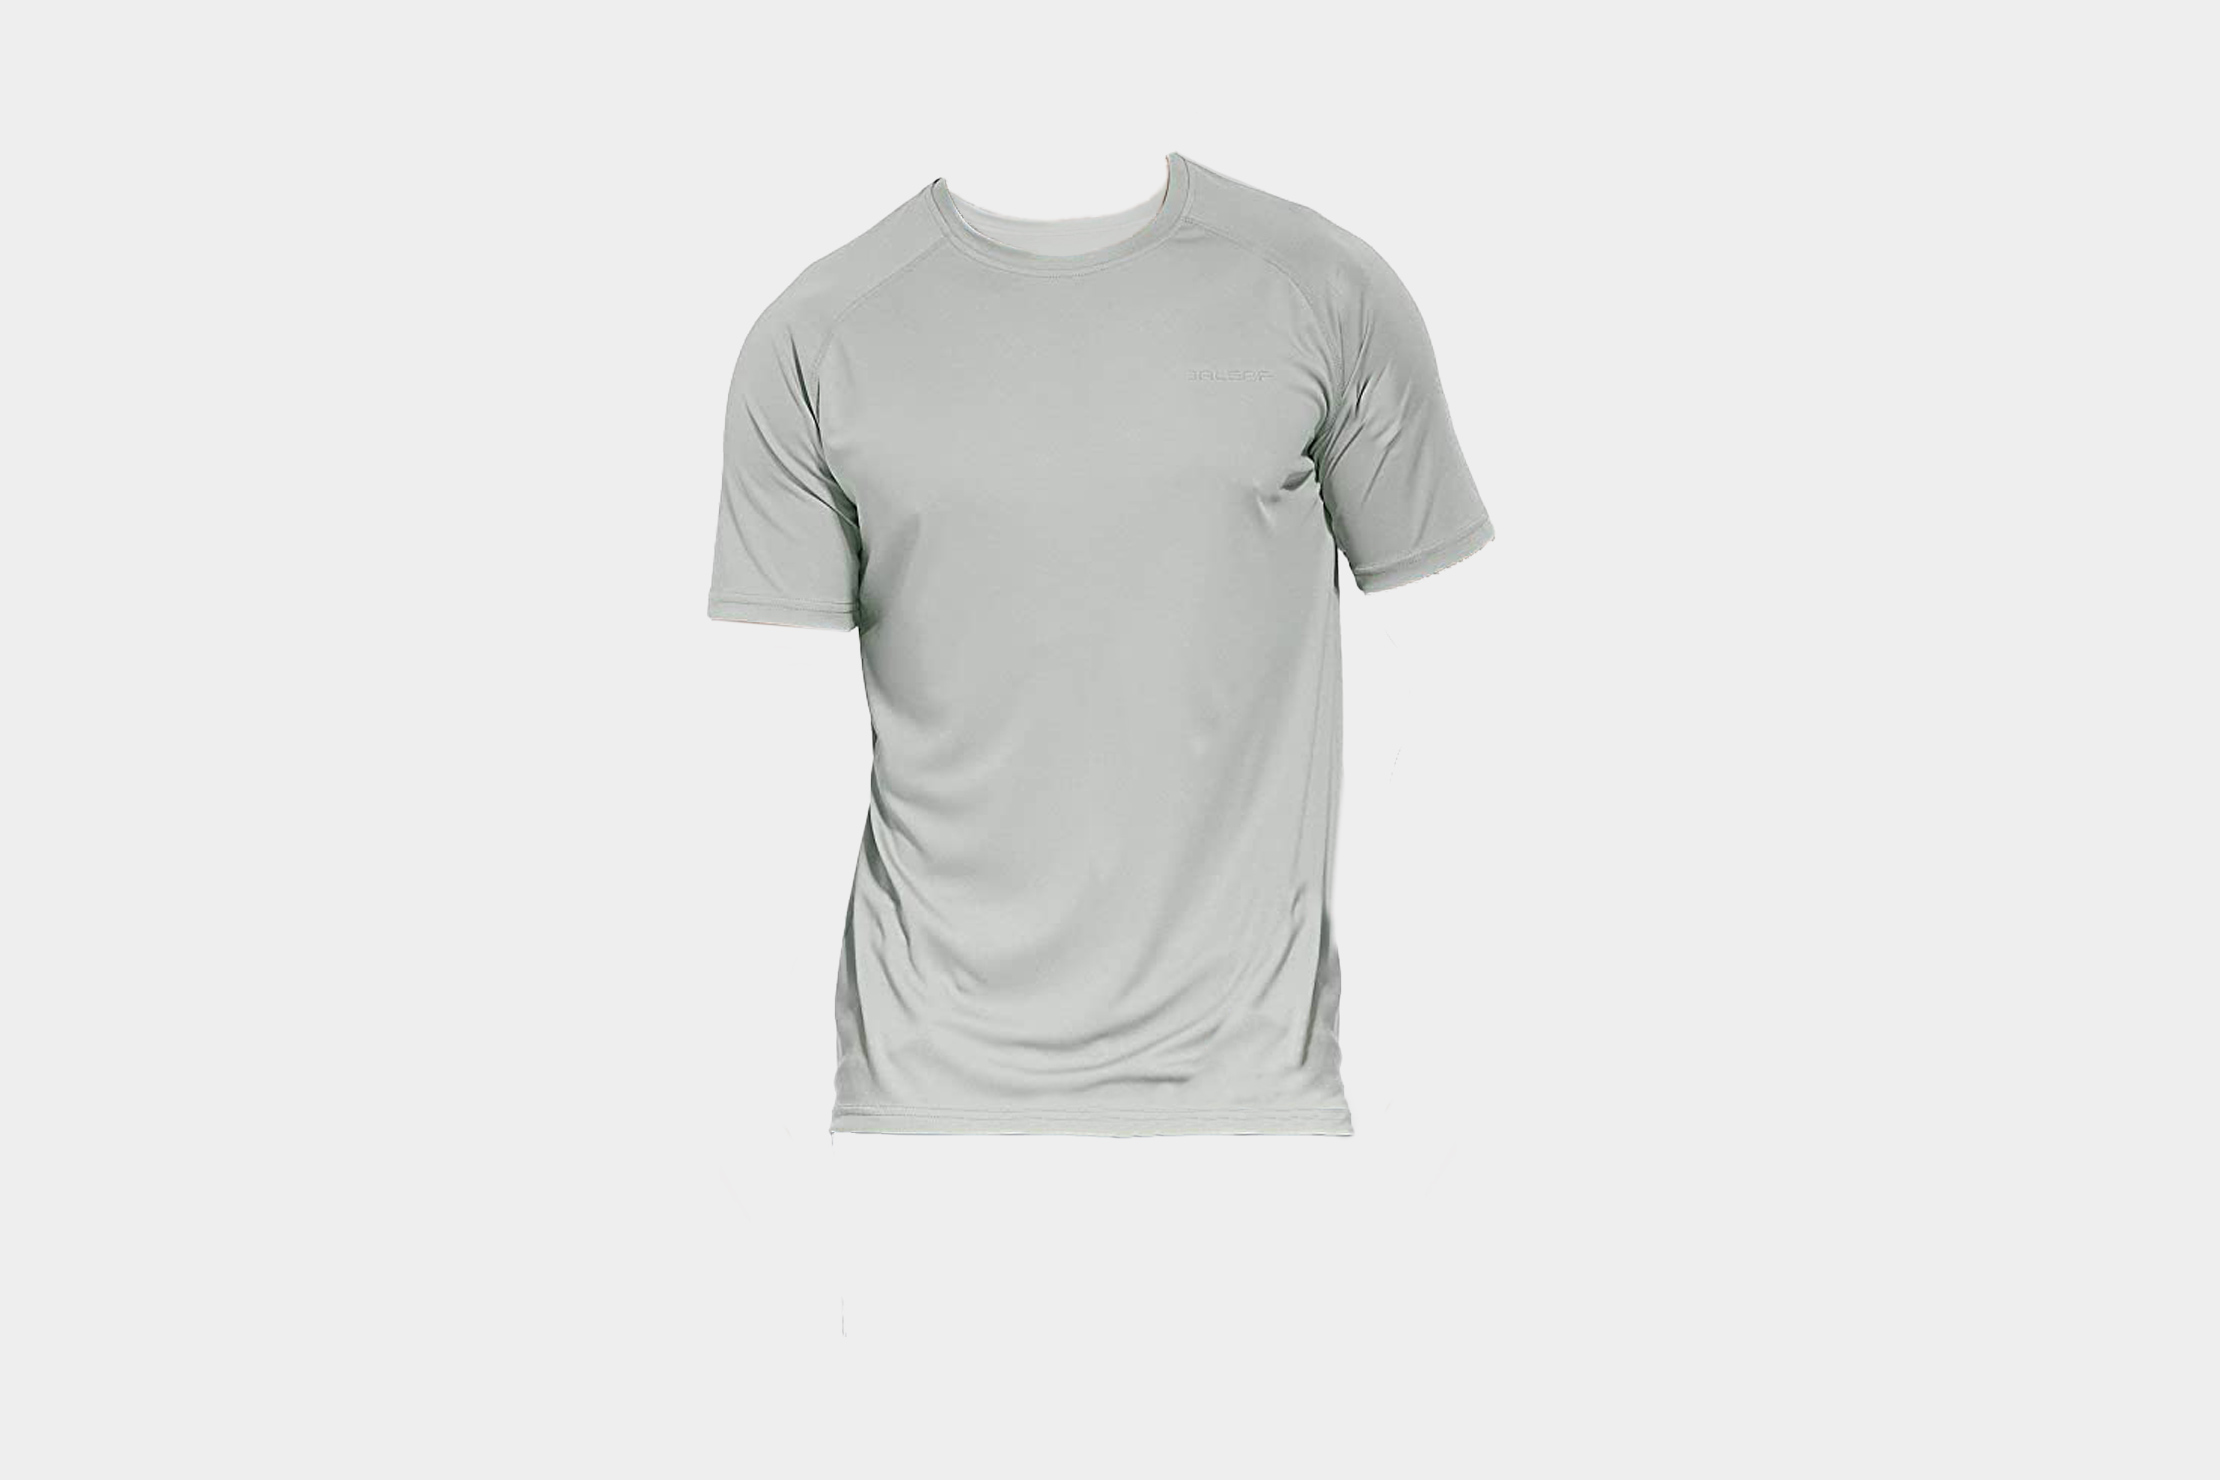 https://cdn.packhacker.com/2022/11/7fca5a72-baleaf-outdoor-running-workout-short-sleeve-t-shirt.jpg